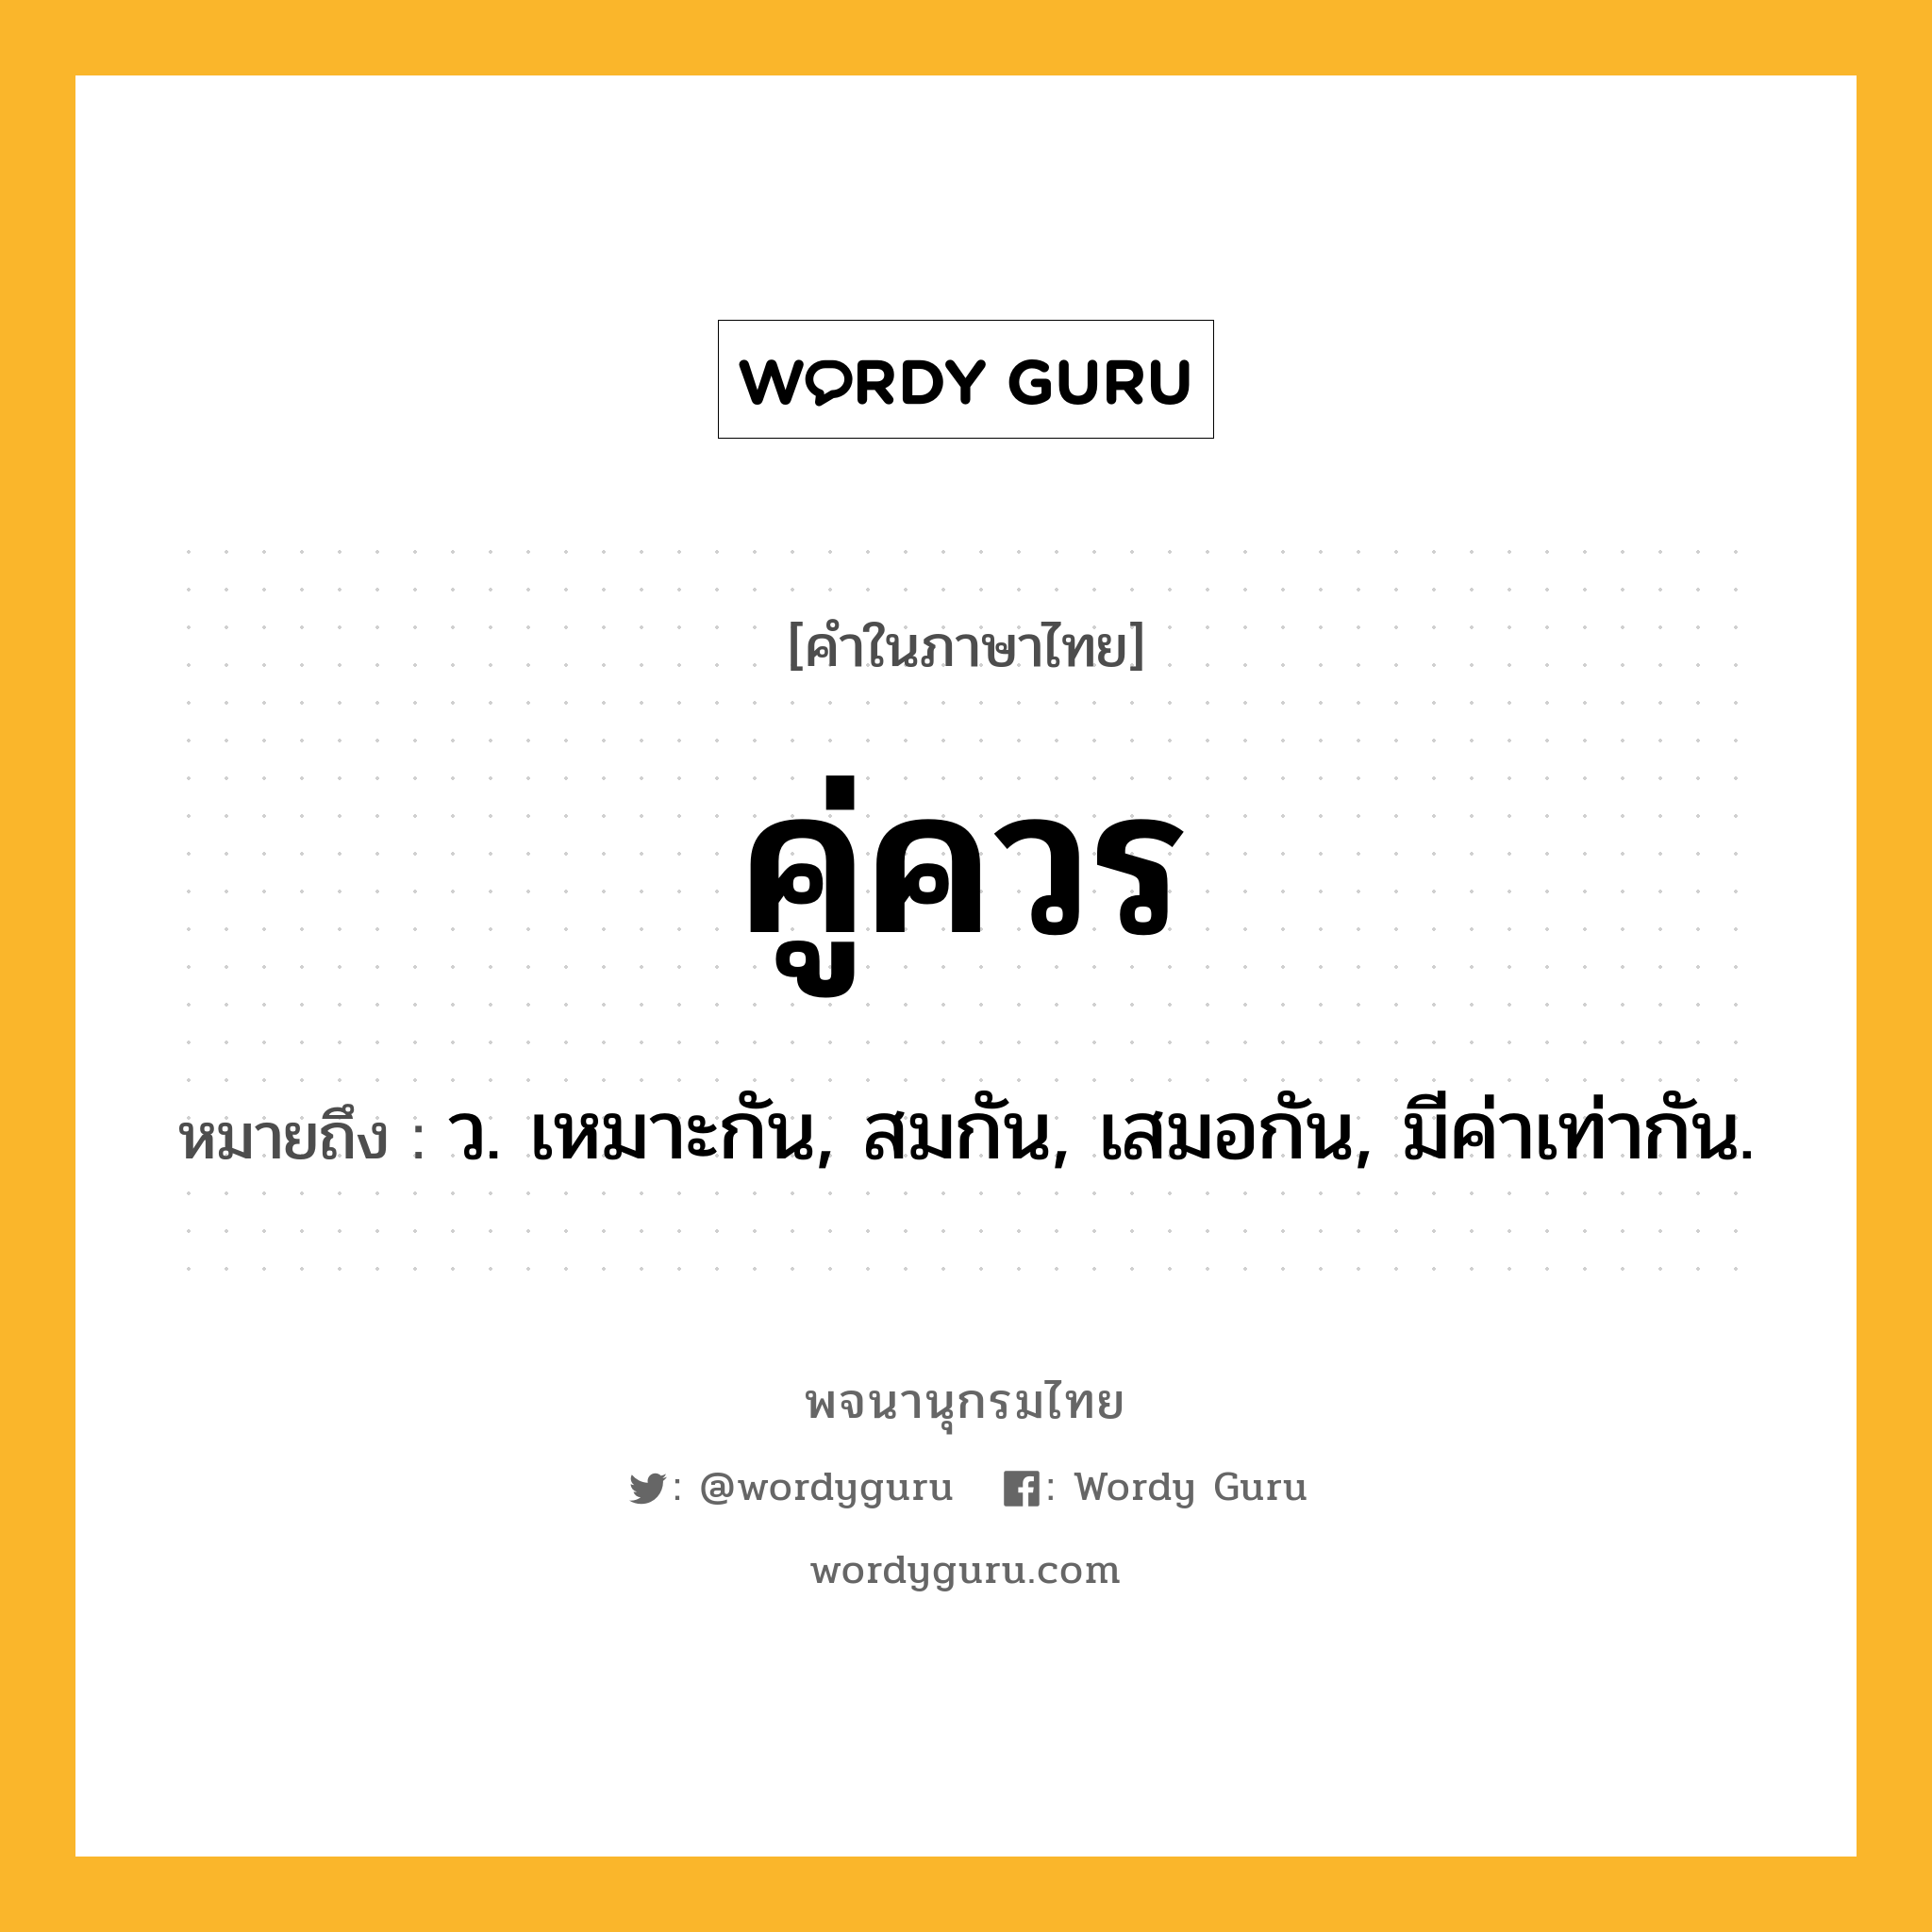 คู่ควร หมายถึงอะไร?, คำในภาษาไทย คู่ควร หมายถึง ว. เหมาะกัน, สมกัน, เสมอกัน, มีค่าเท่ากัน.